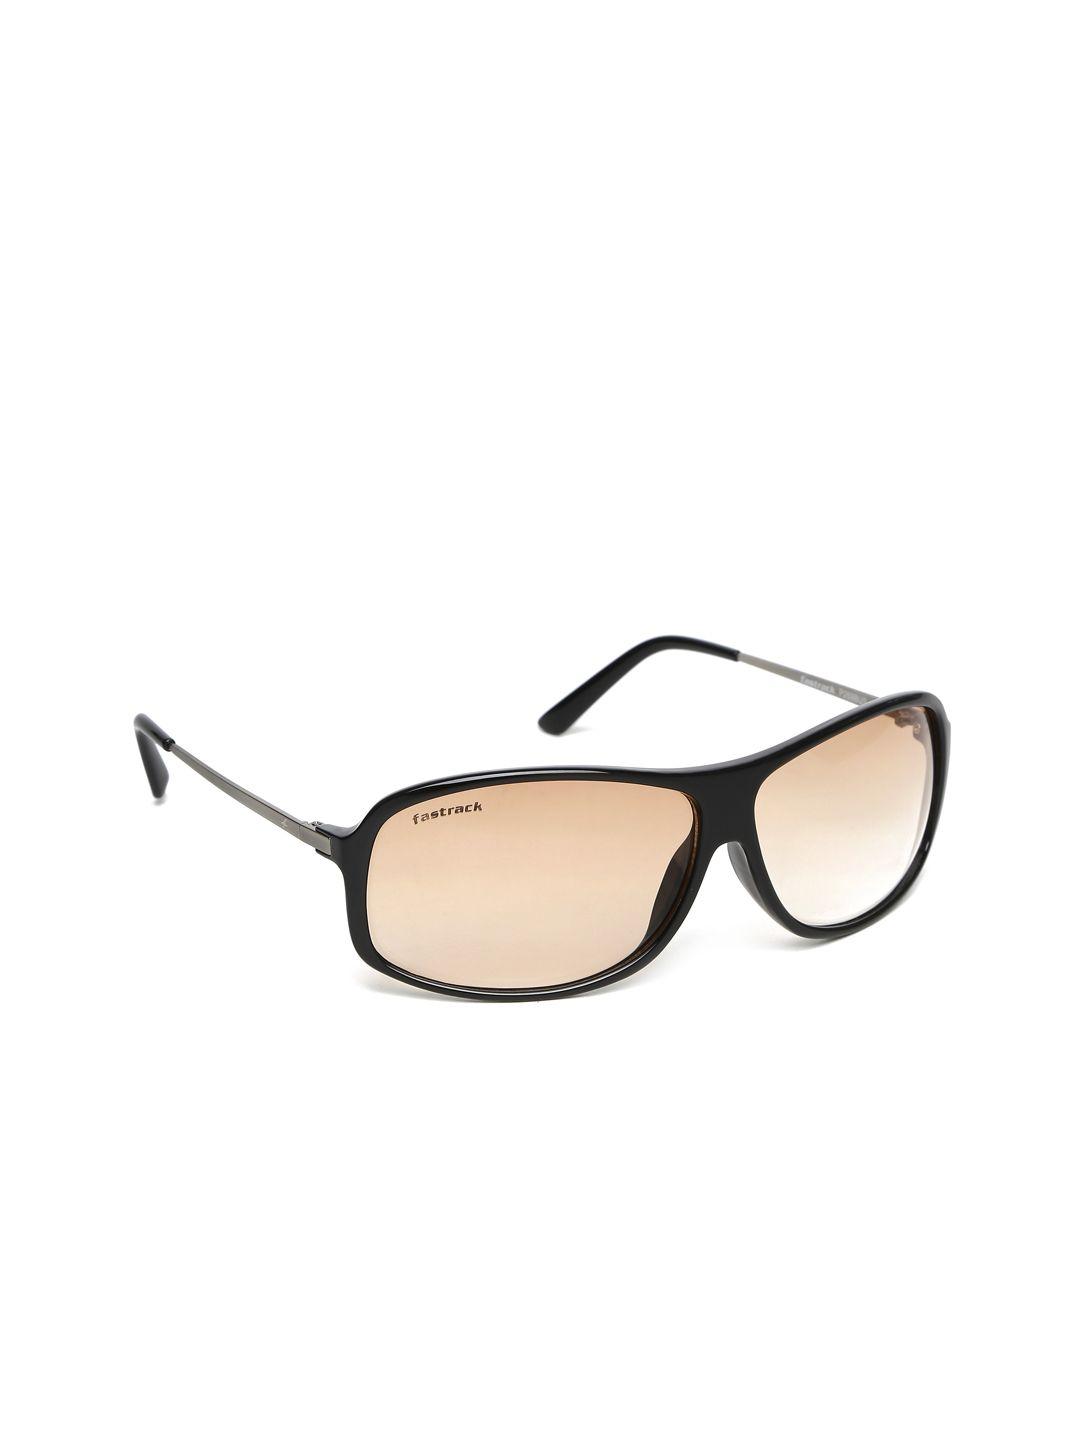 fastrack-men-gradient-sunglasses-p269bu3